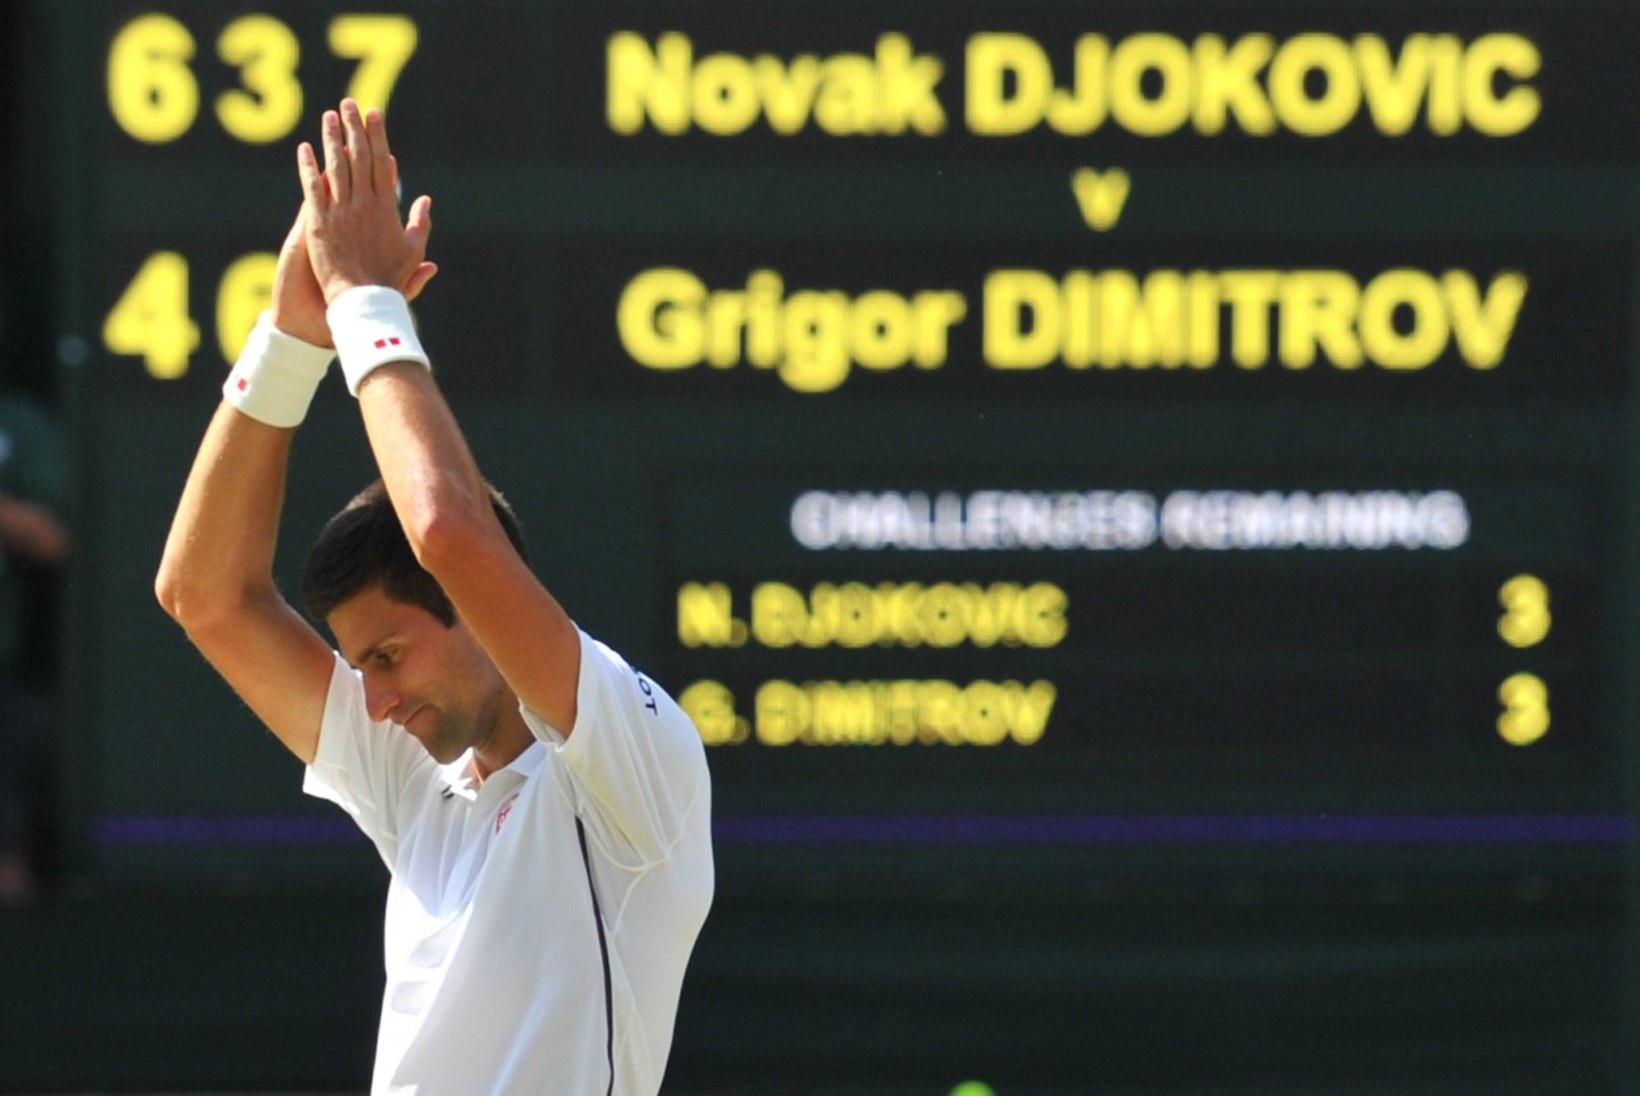 FOTOD: Djokovicil kulus Dimitrovi alistamiseks kolm tundi